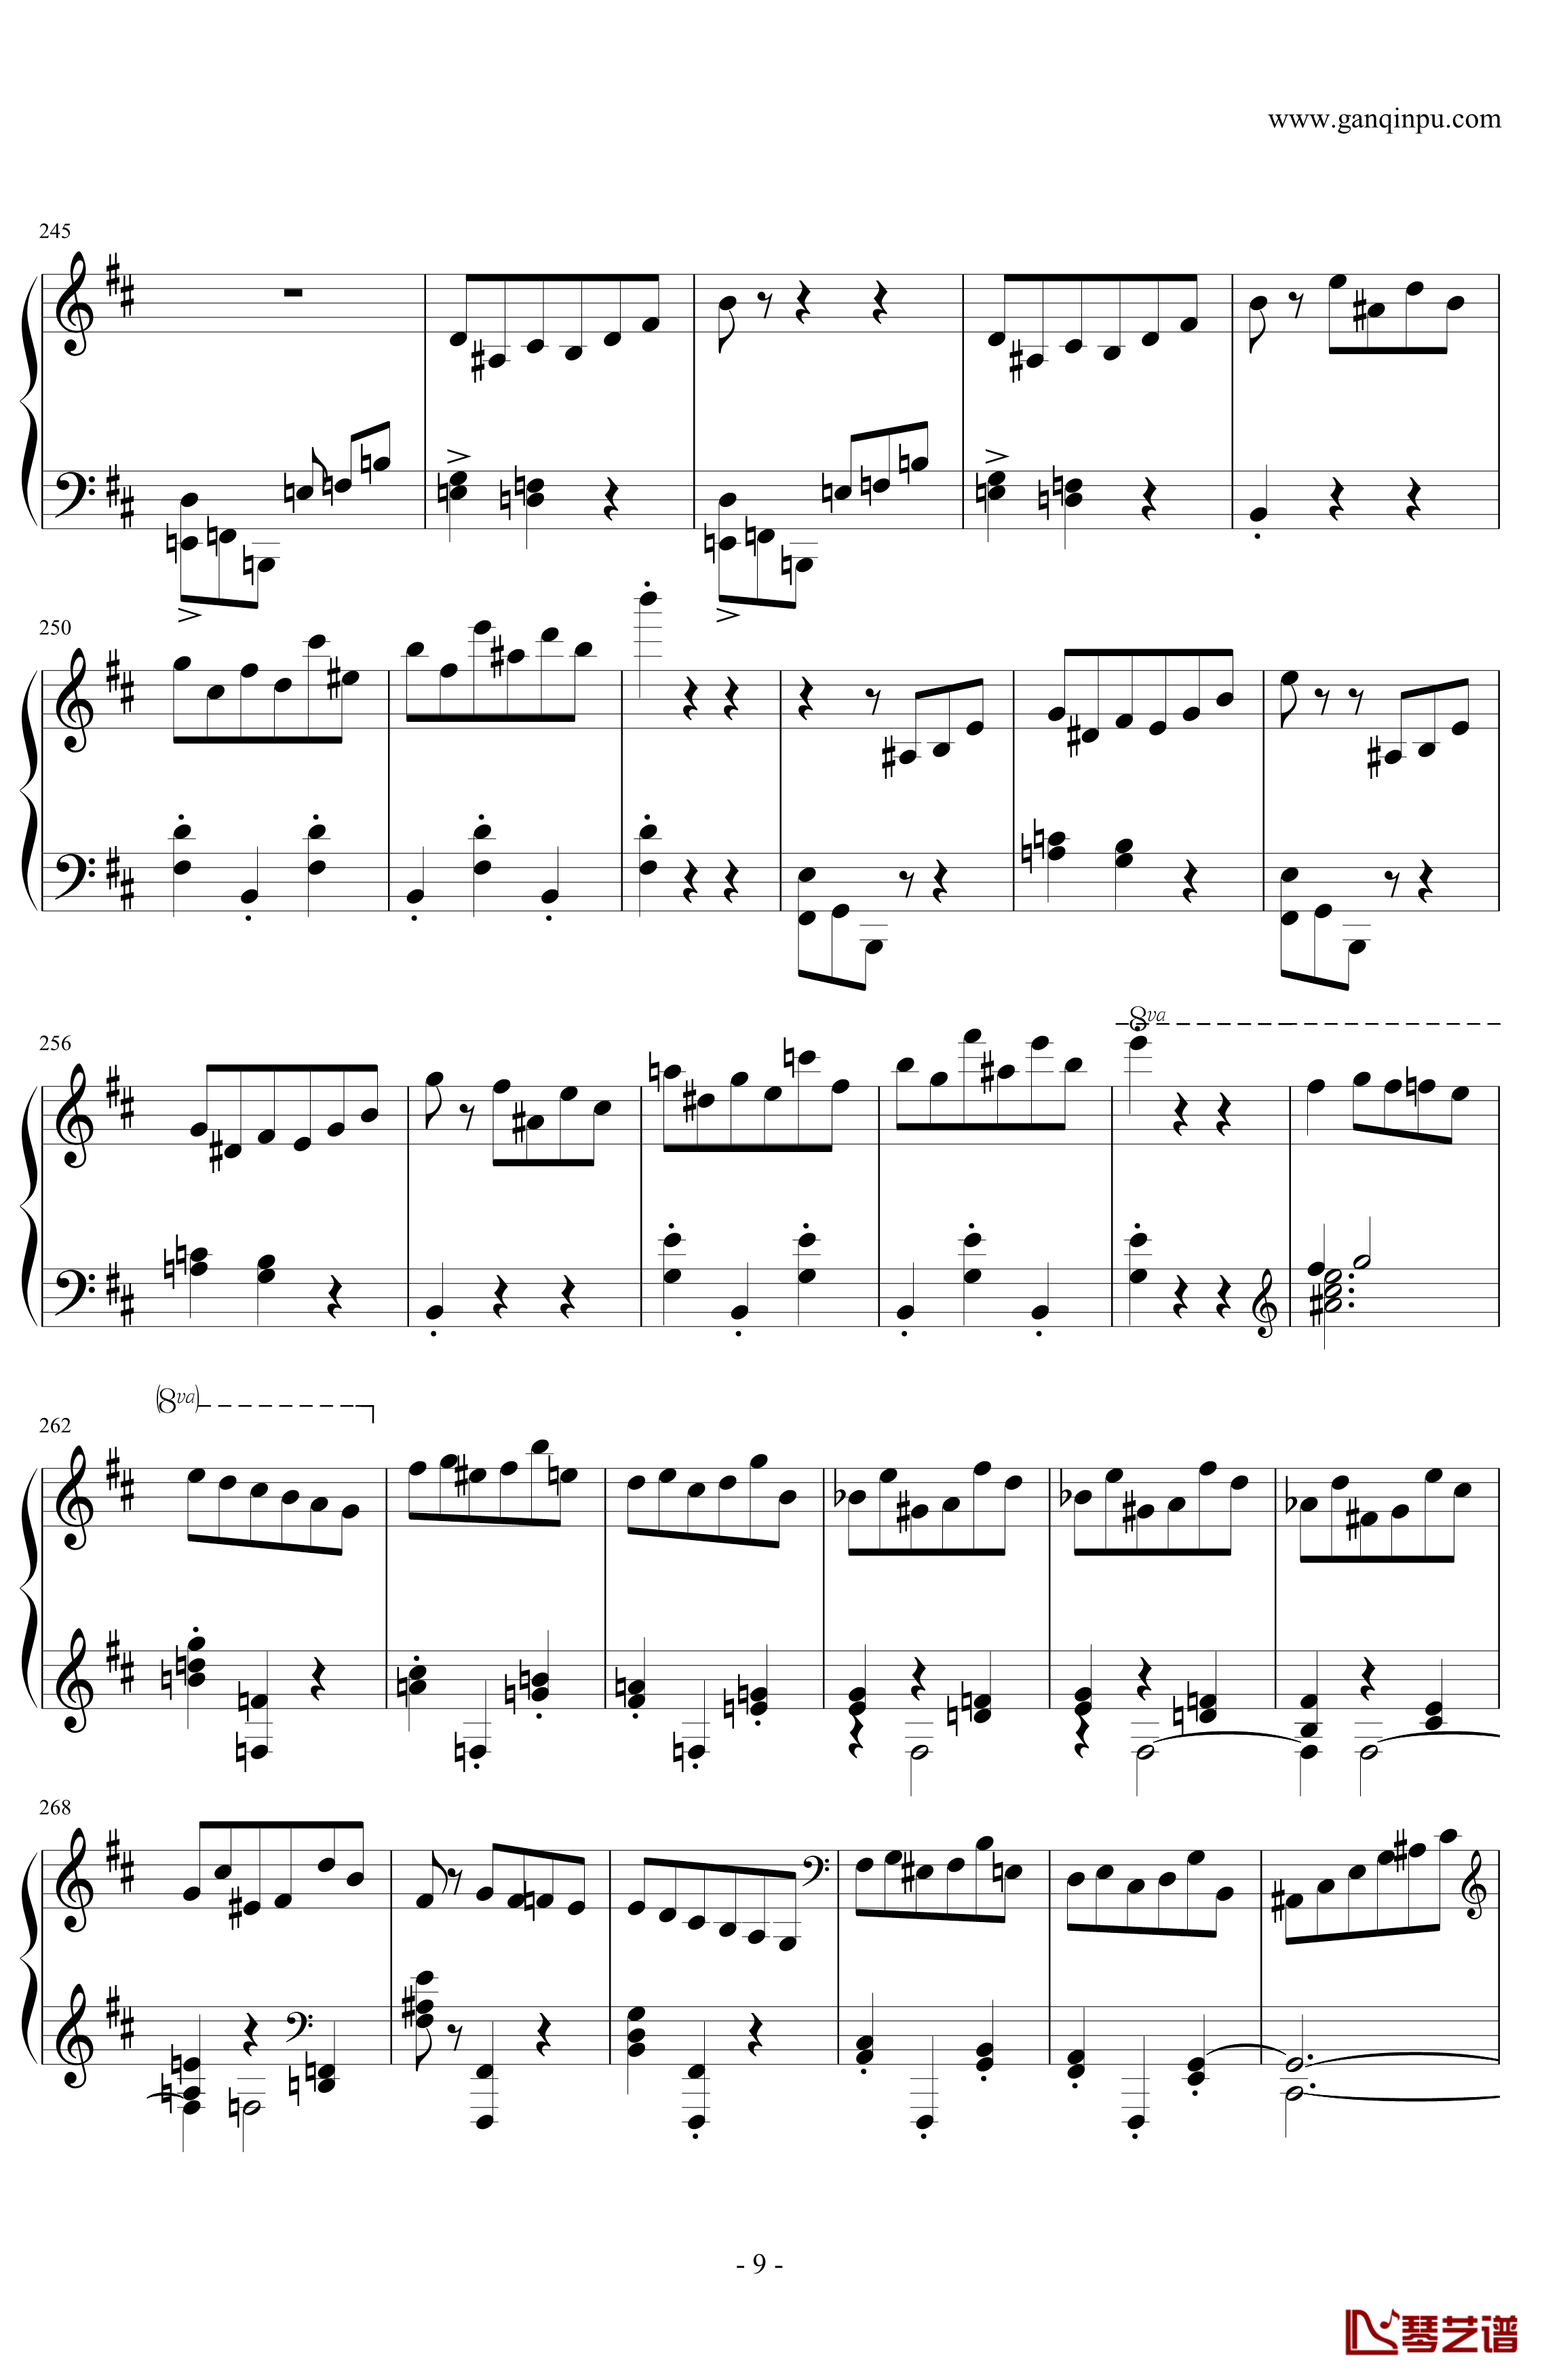 肖邦第一谐谑曲钢琴谱-肖邦-chopin9